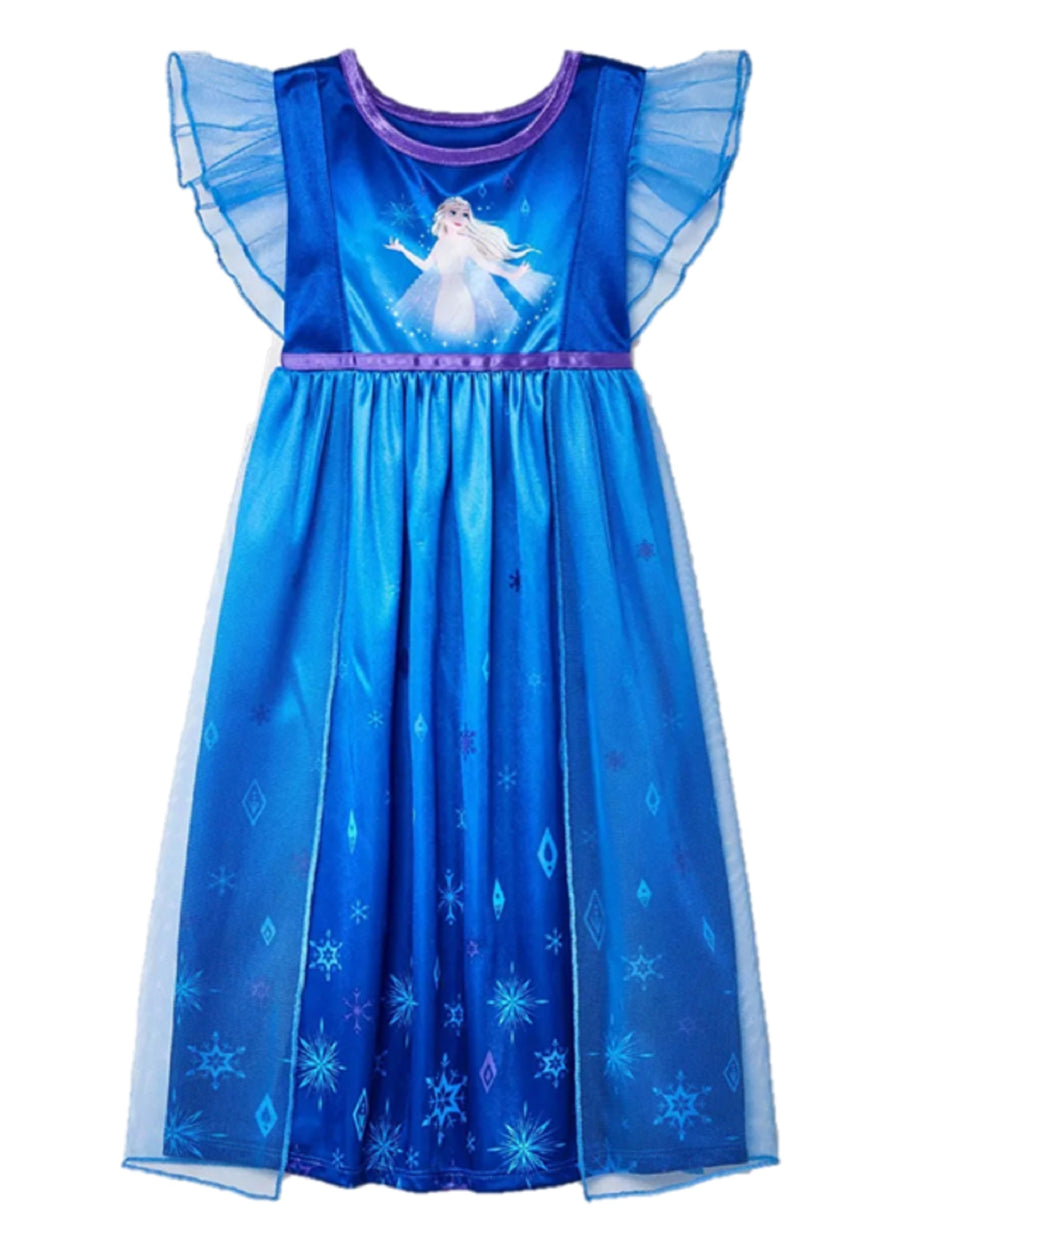 Toddler Girls' Frozen Elsa Fantasy Fantasy NightGown Night Gown - Blue